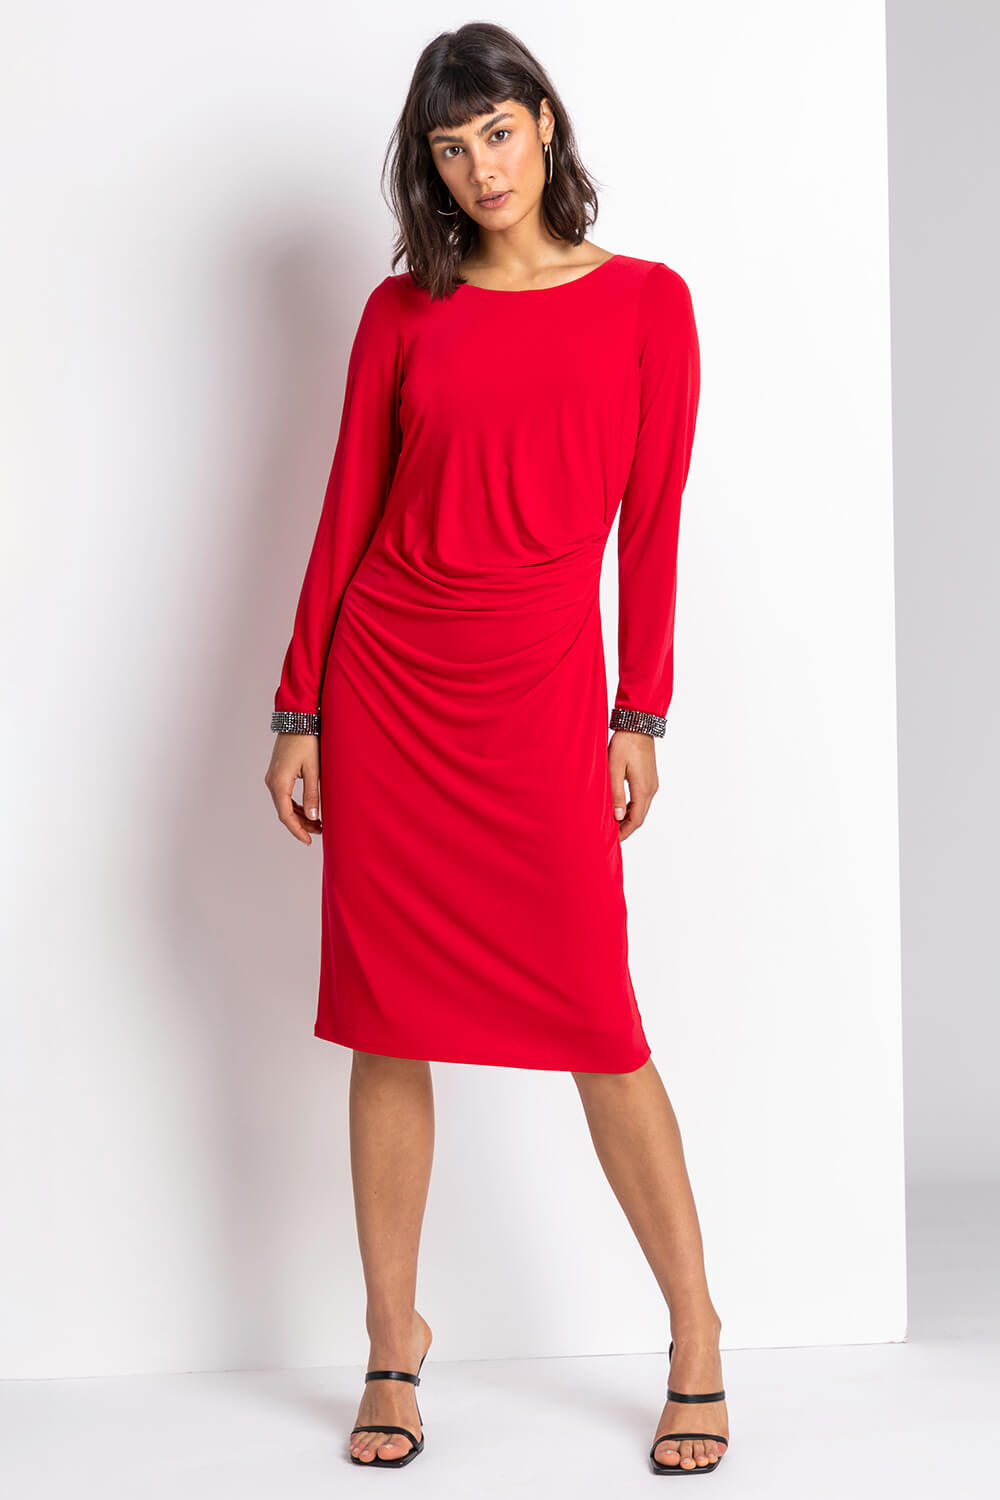 Red Sparkle Embellished Ruched Dress, Image 3 of 4